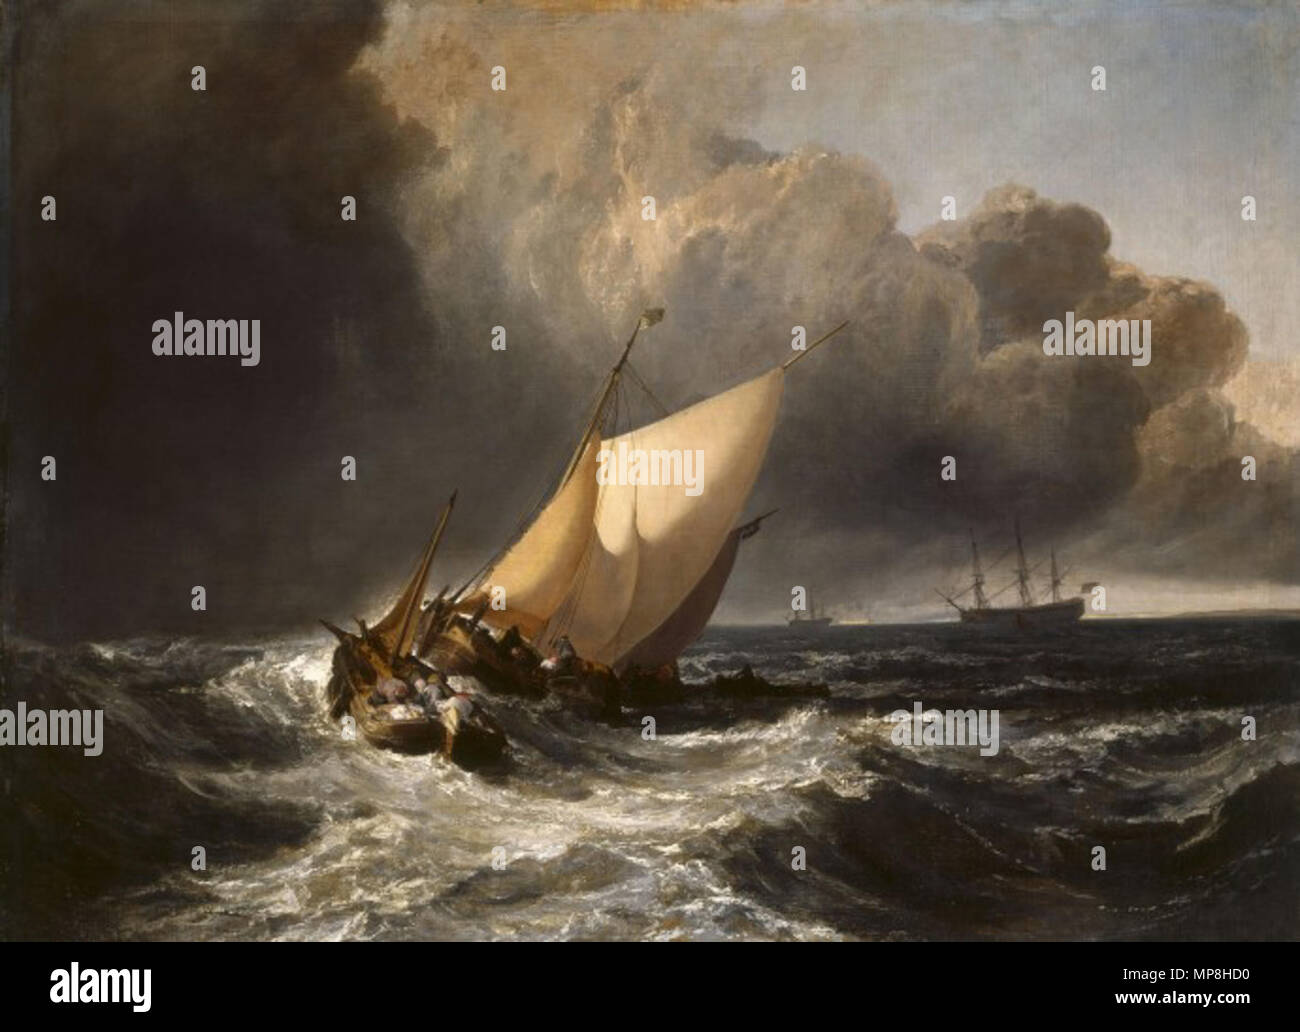 Bateaux néerlandais dans une tempête en 1801. 742 Joseph Mallord William Turner - bateaux hollandais dans une gale - WGA23163 Banque D'Images